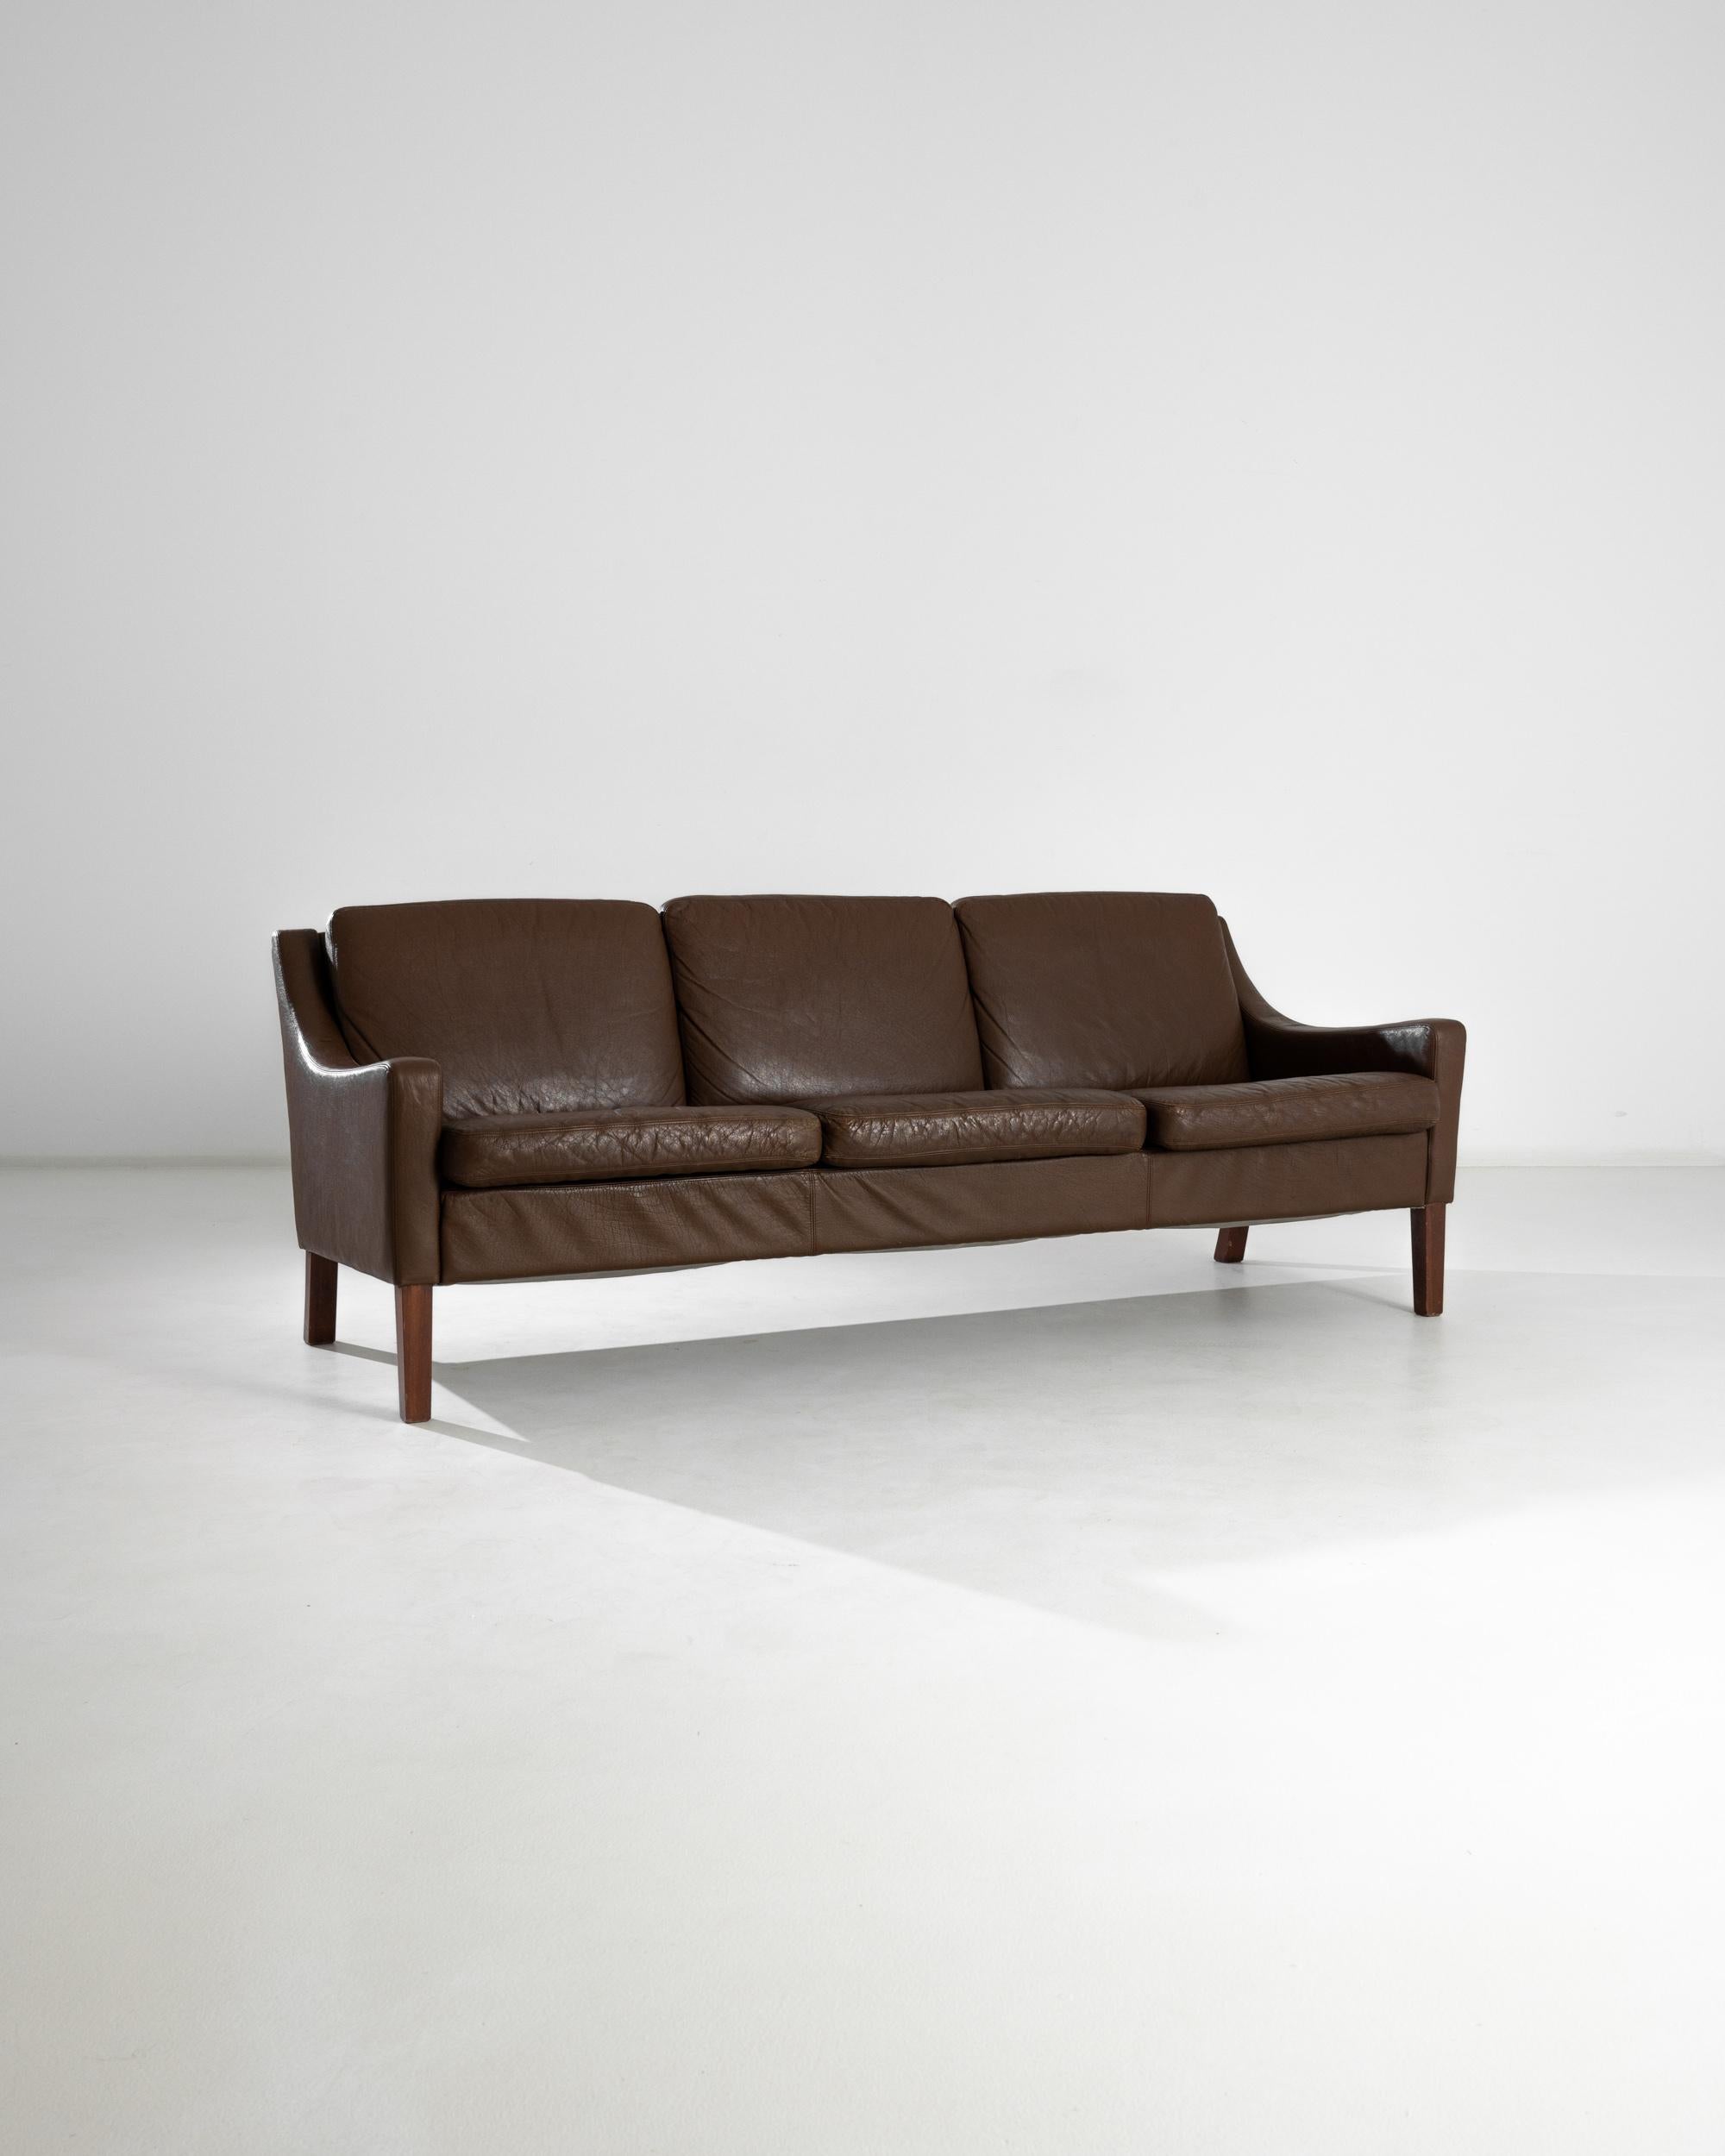 Un canapé en cuir du Danemark, produit au cours du 20ème siècle. Un magnifique canapé vintage à trois places enveloppé d'un somptueux cuir brun. Posée sur quatre pieds carrés, cette pièce se trouve à la confluence des styles du XXe siècle : on y